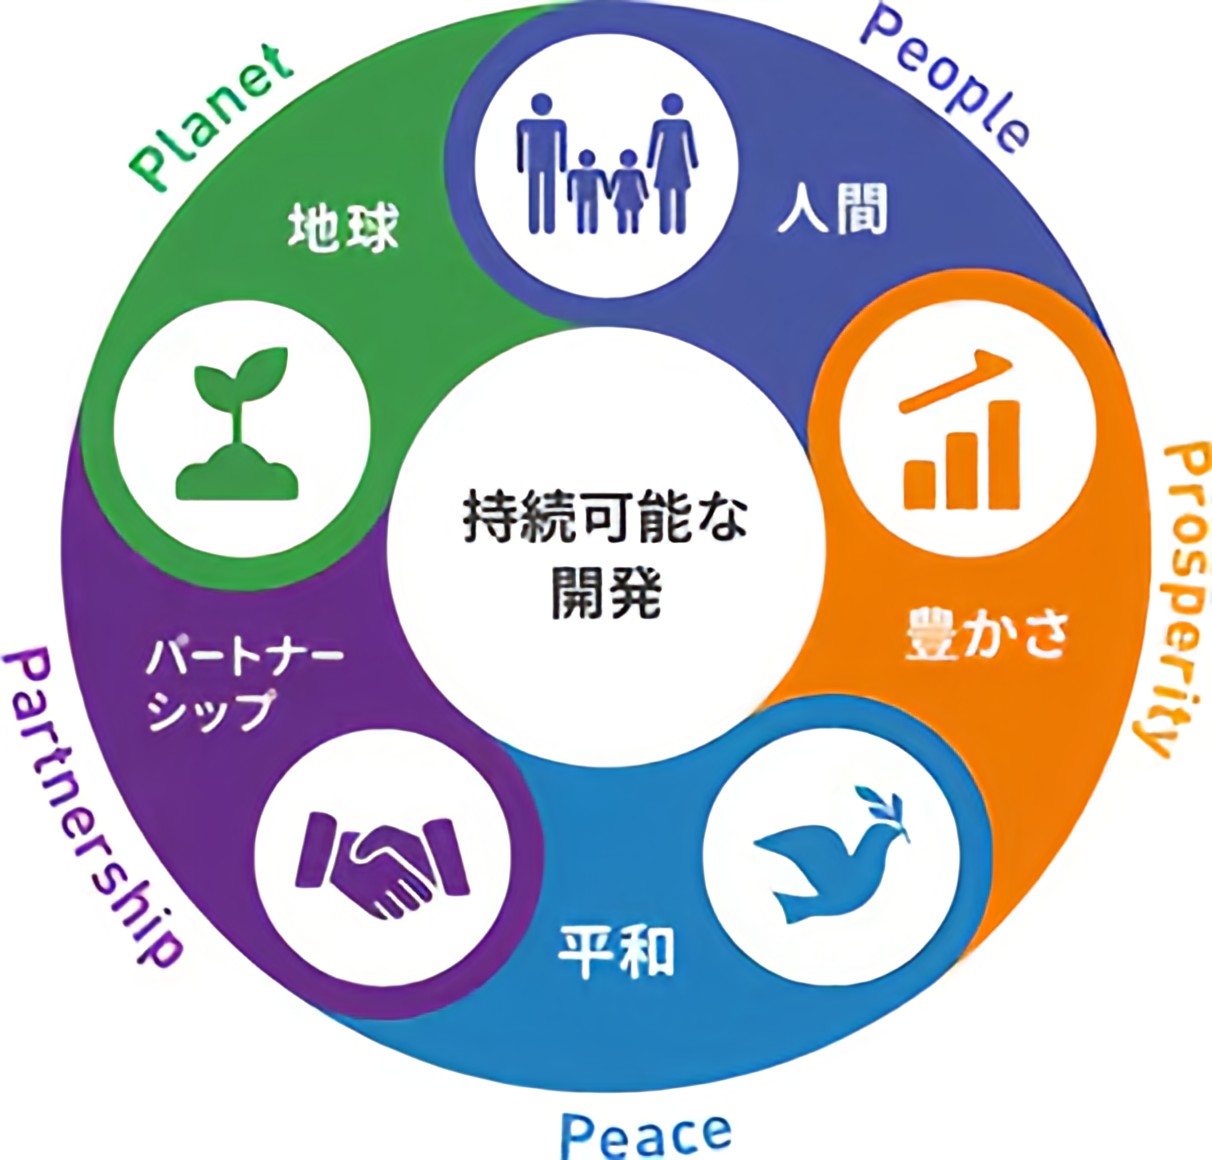 地球、人間、豊かさ、平和、パートナーシップで持続可能な開発を囲うイラスト